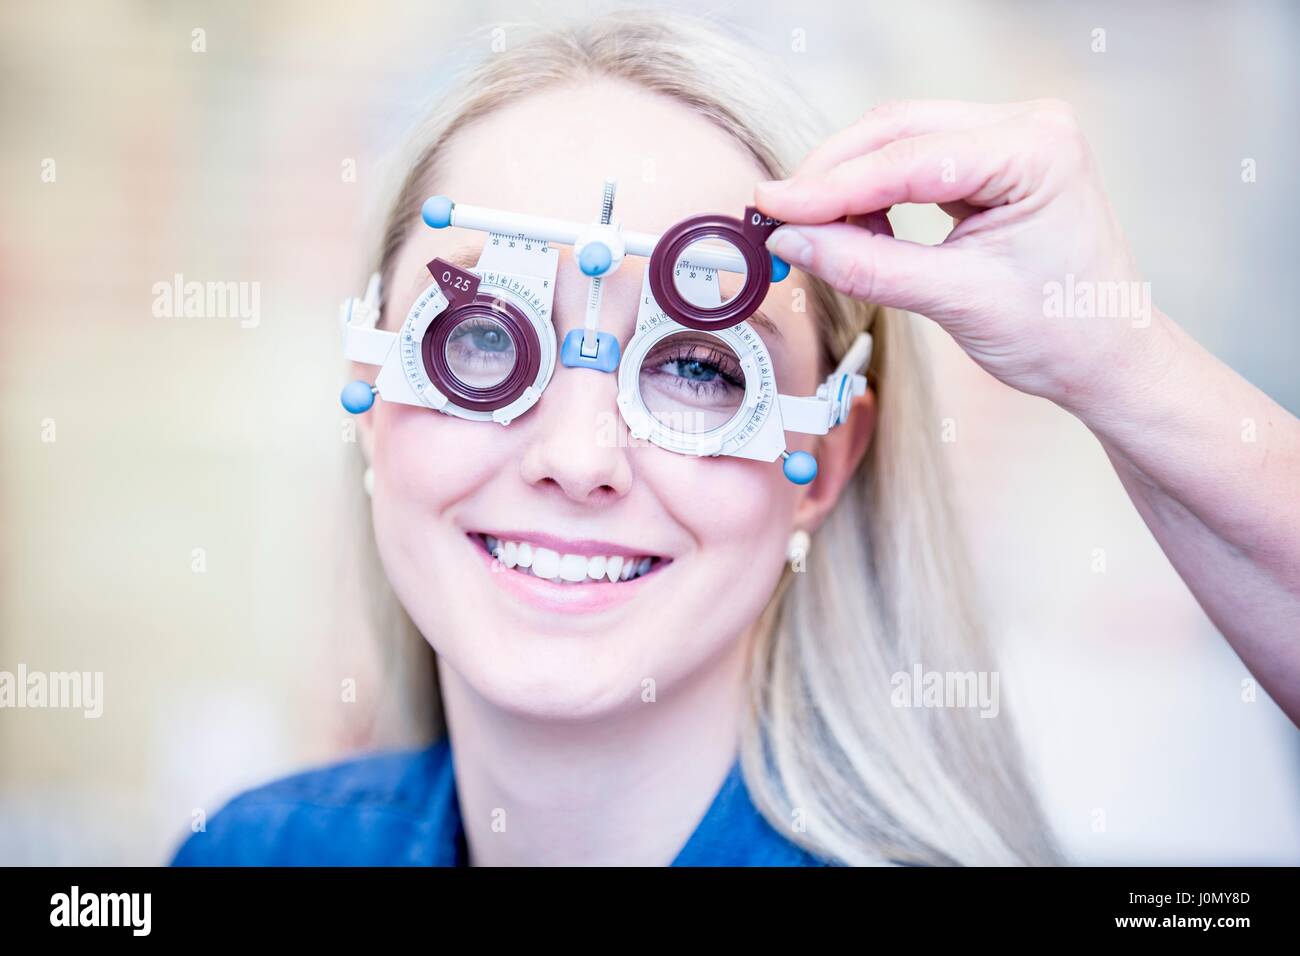 Ritratto di Allegro giovane donna con occhio in esame all'ottico optometrista del negozio, close-up. Foto Stock